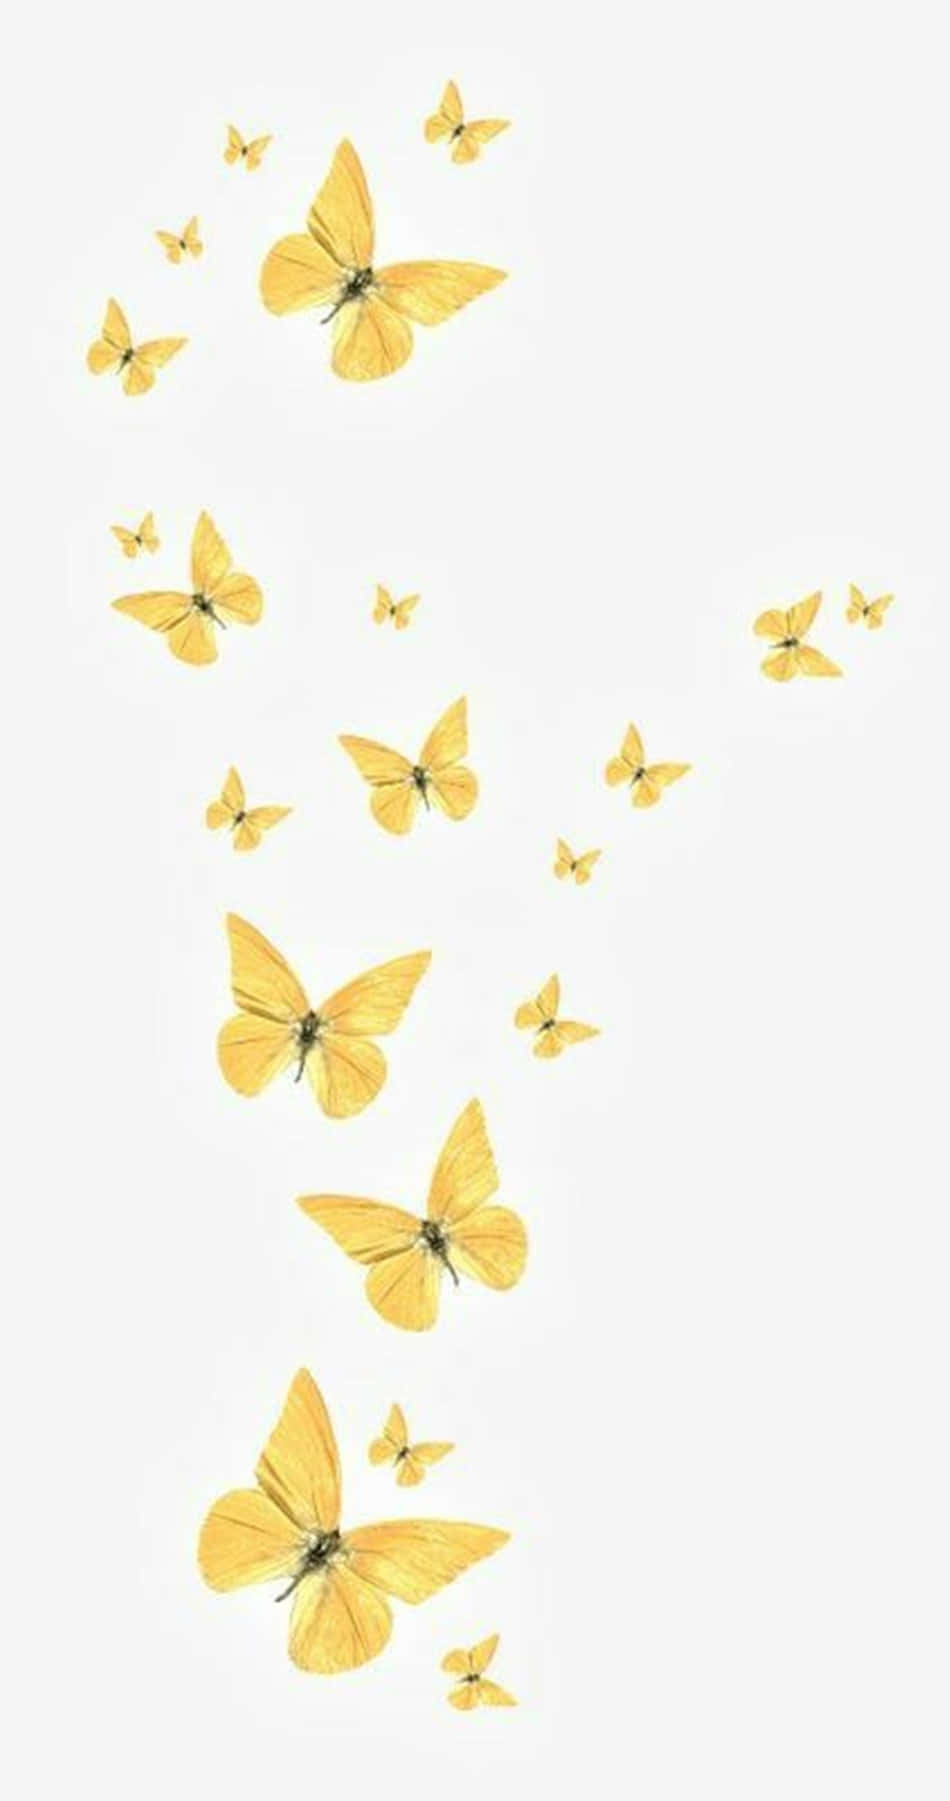 To energiske gule sommerfugle, der leder efter et friskt start. Wallpaper